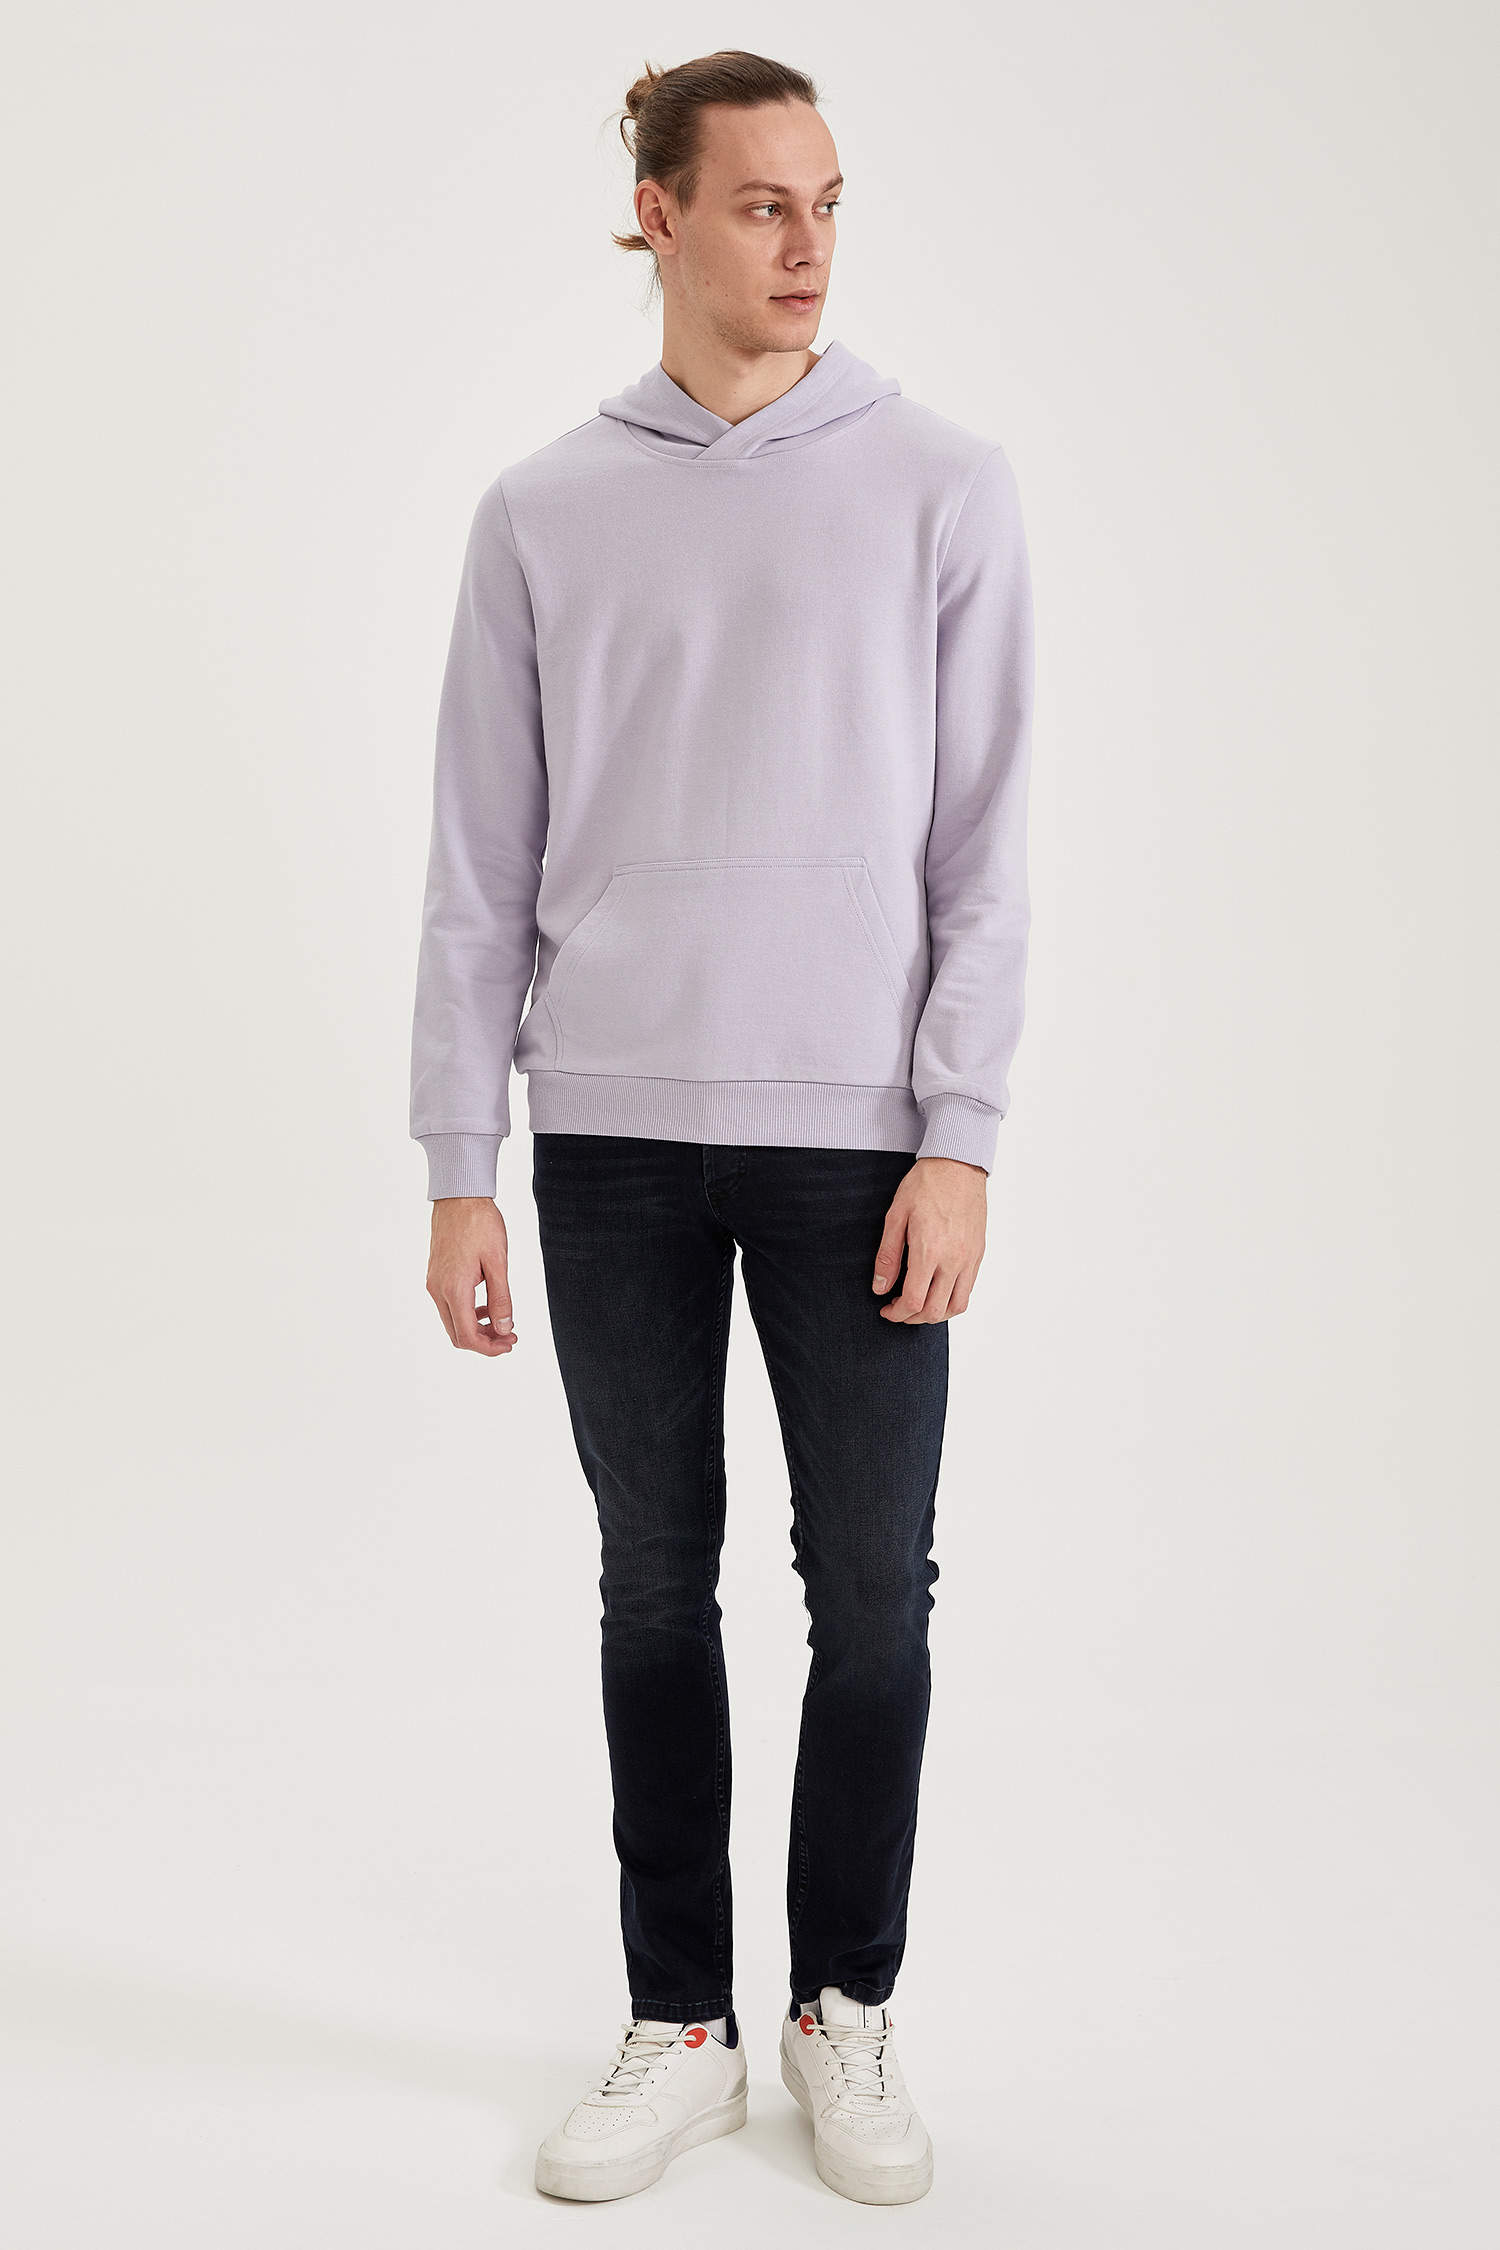 Defacto Kapüşonlu Slim Fit Basic Sweatshirt. 2